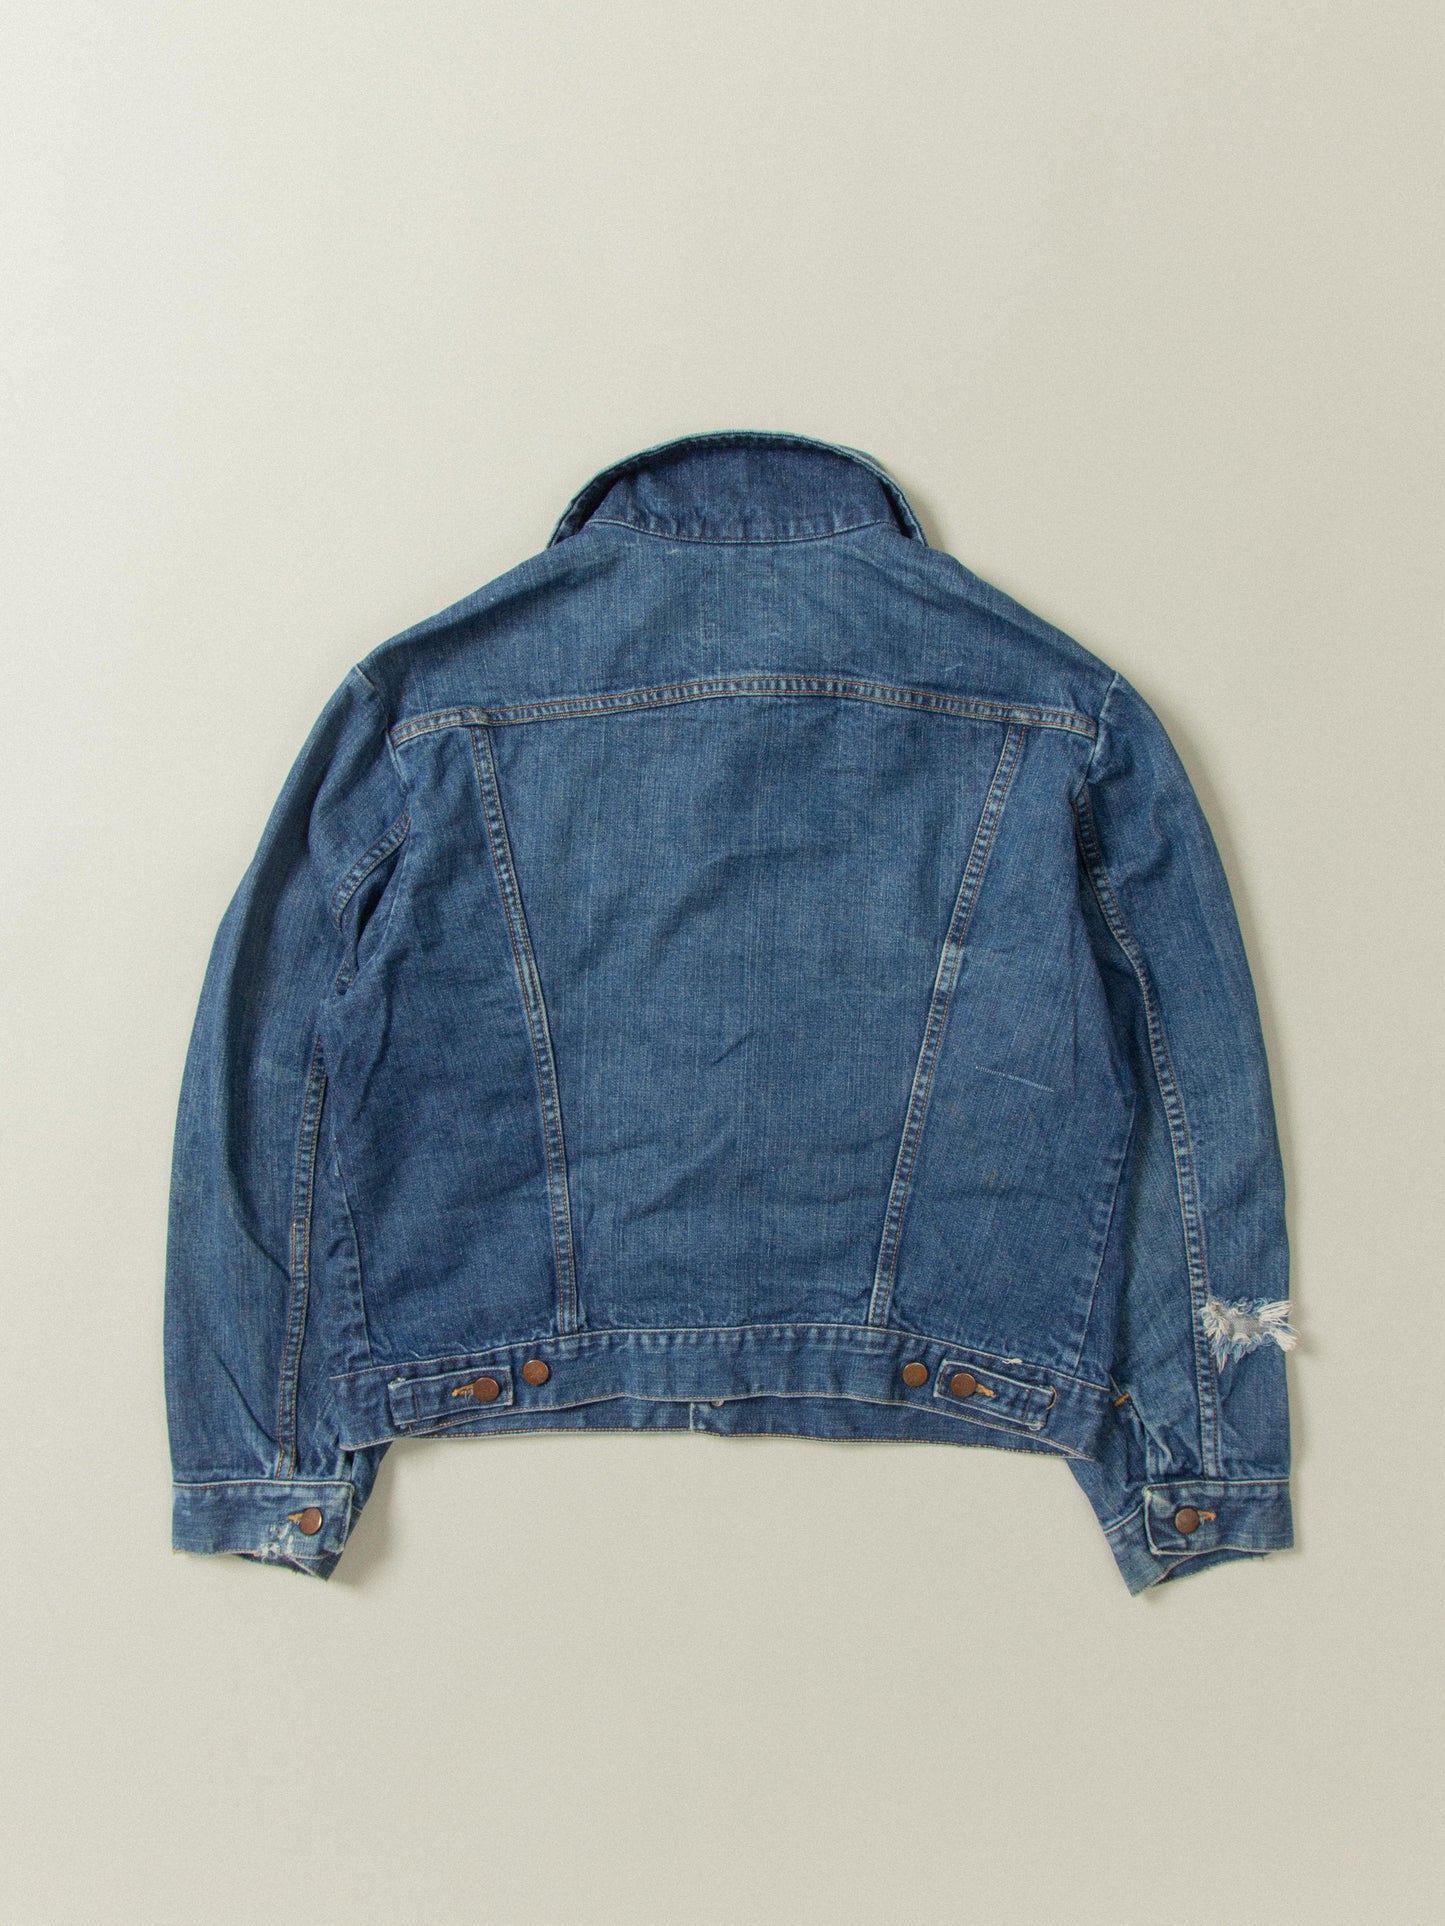 Vtg 1970s Wrangler Denim Jacket - Made in USA (M)